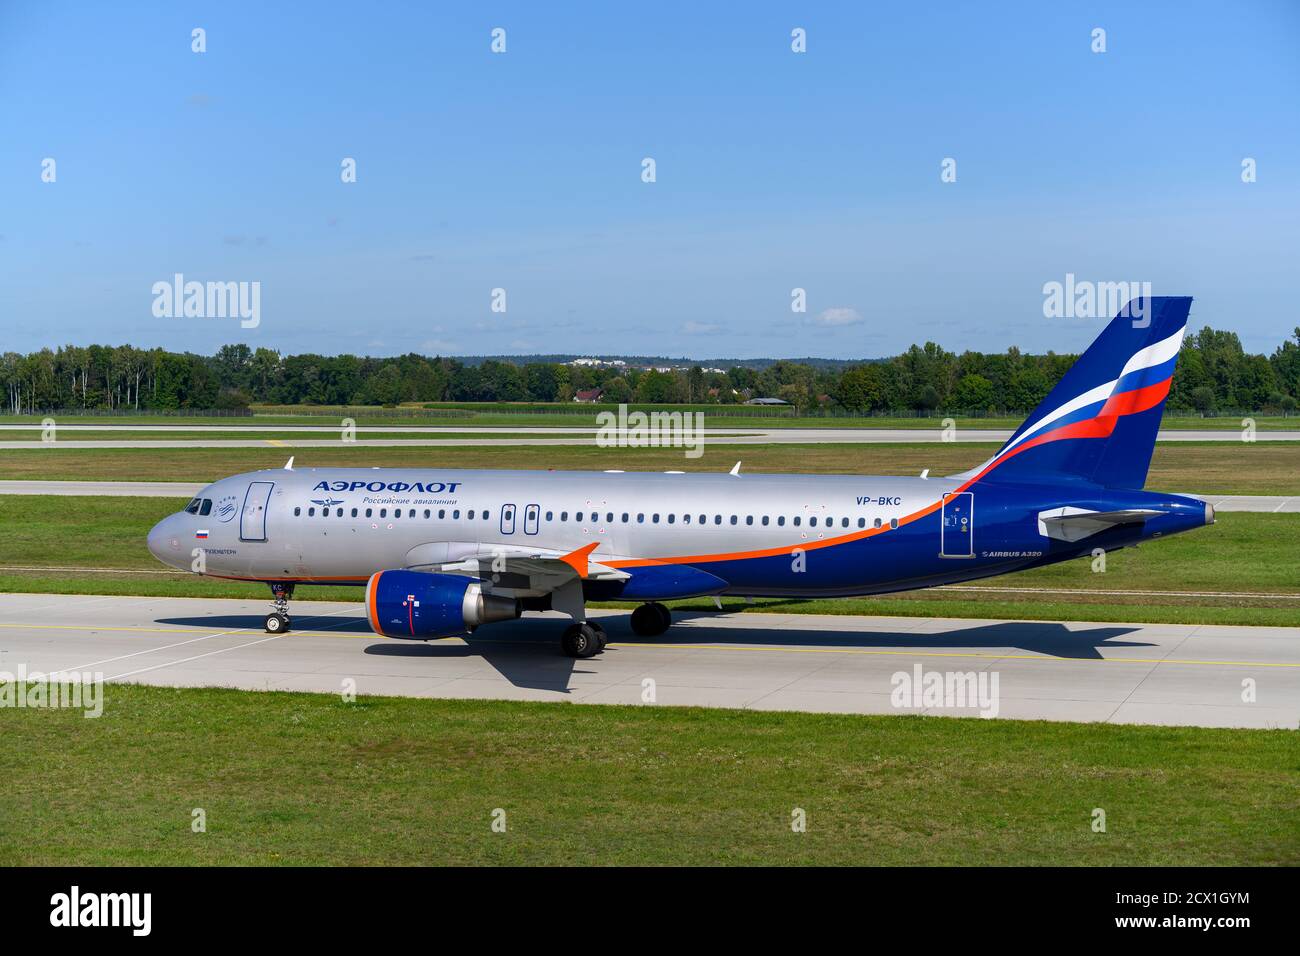 Monaco, Germania - Settembre 19. 2019 : Aeroflot - Russian Airlines Airbus A320-214 con la registrazione dell'aeromobile VP-BKC sta tassando per il decollo su t Foto Stock